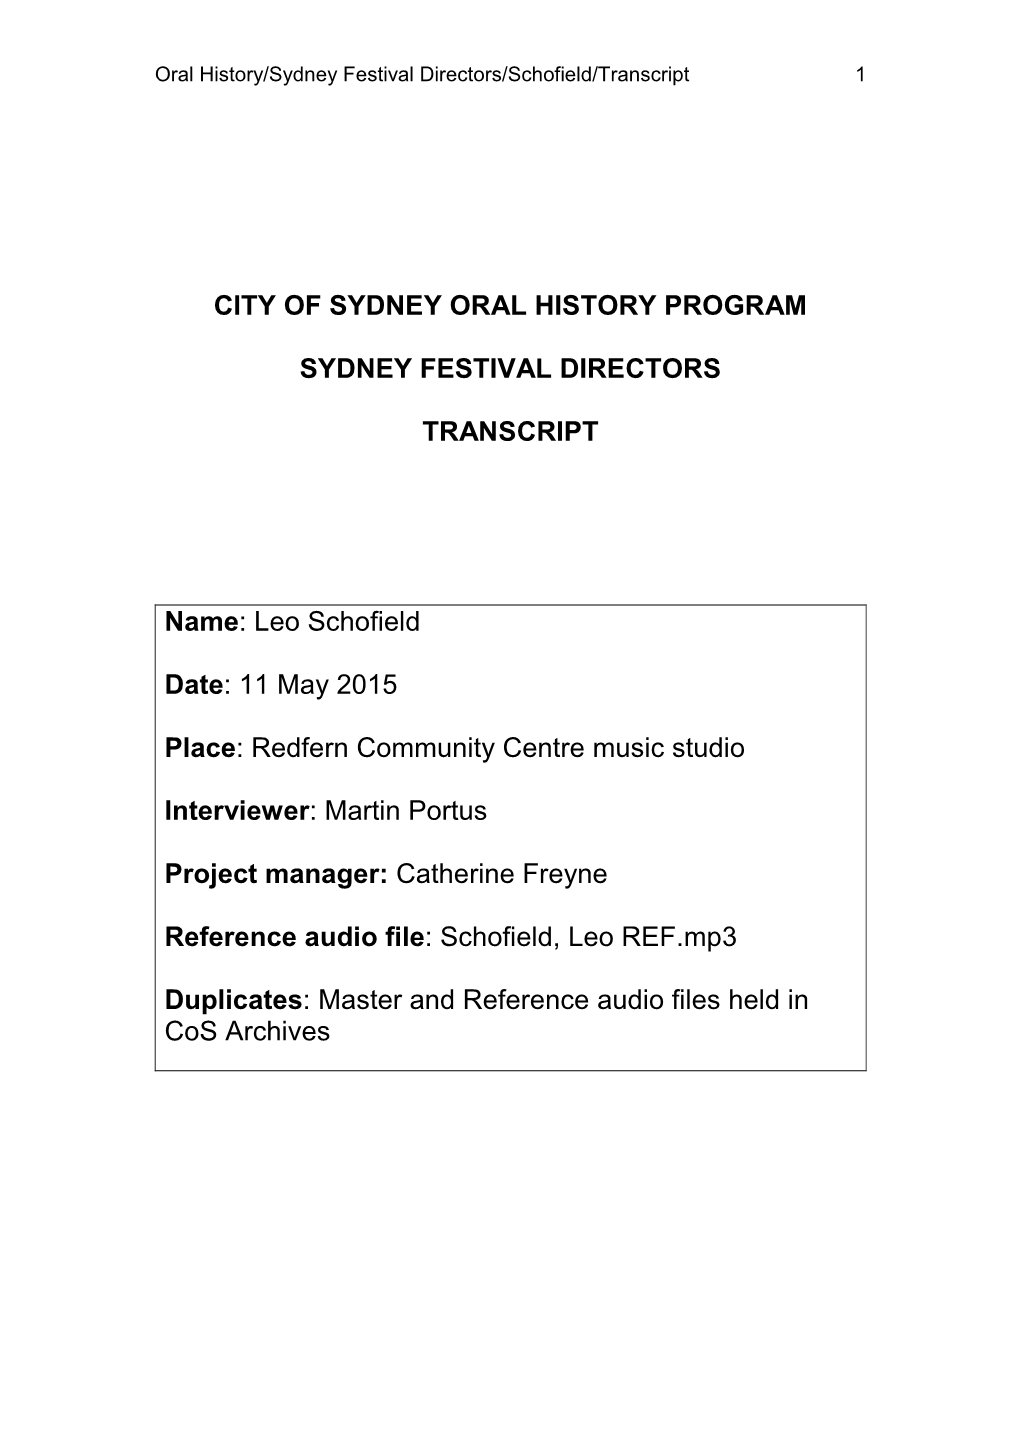 City of Sydney Oral History Program Sydney Festival